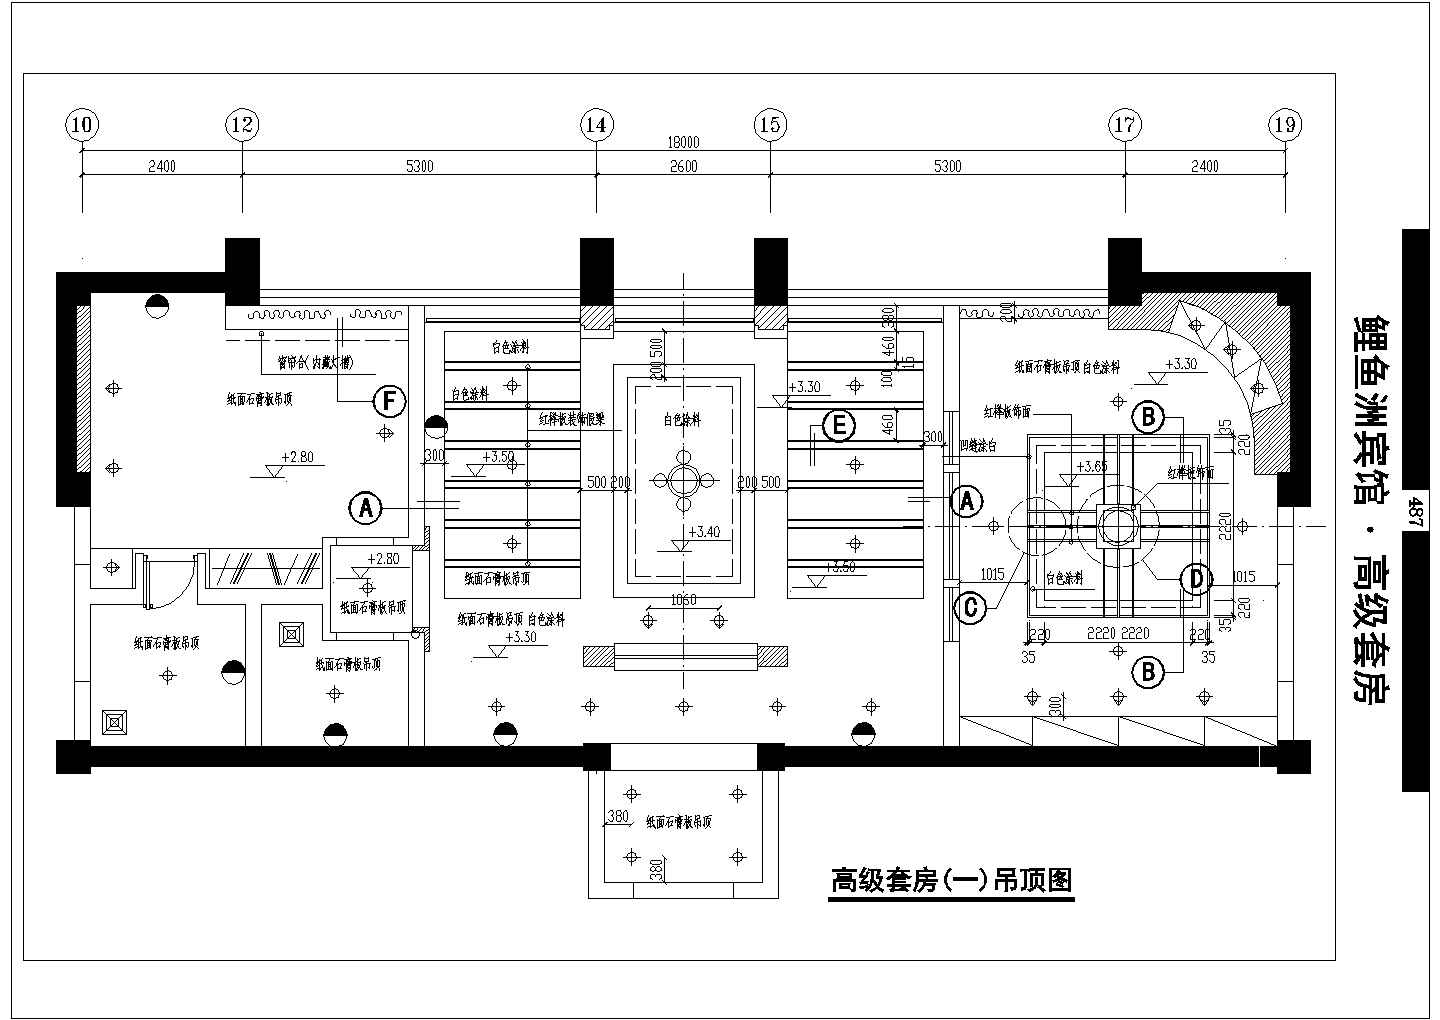 上海某四星级酒店多种高级套房全套装修设计CAD图纸